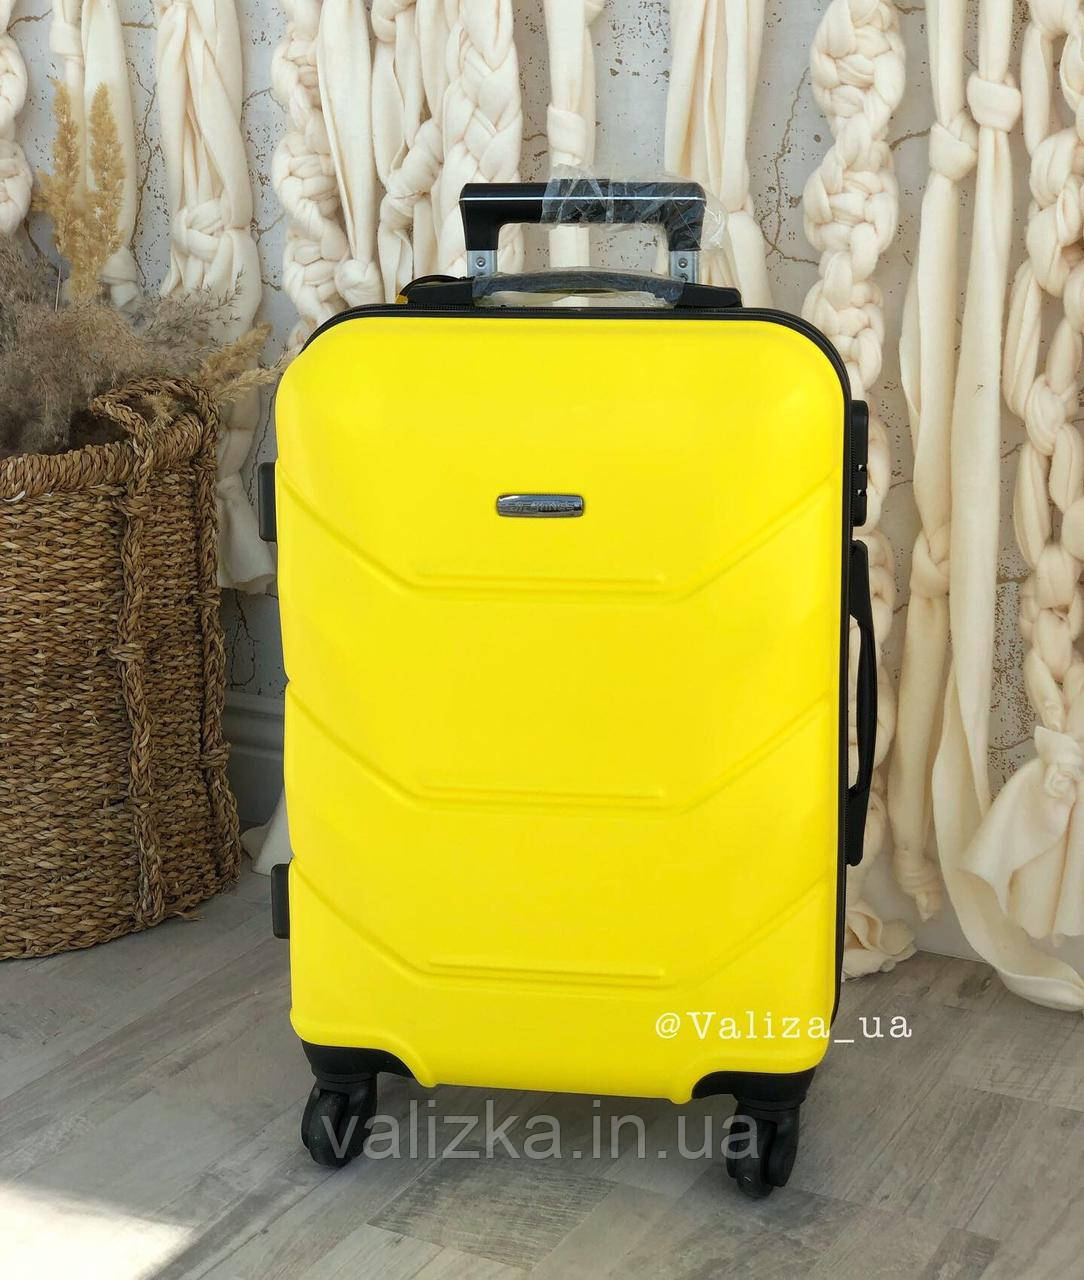 Средний пластиковый чемодан желтый из поликарбоната Польша